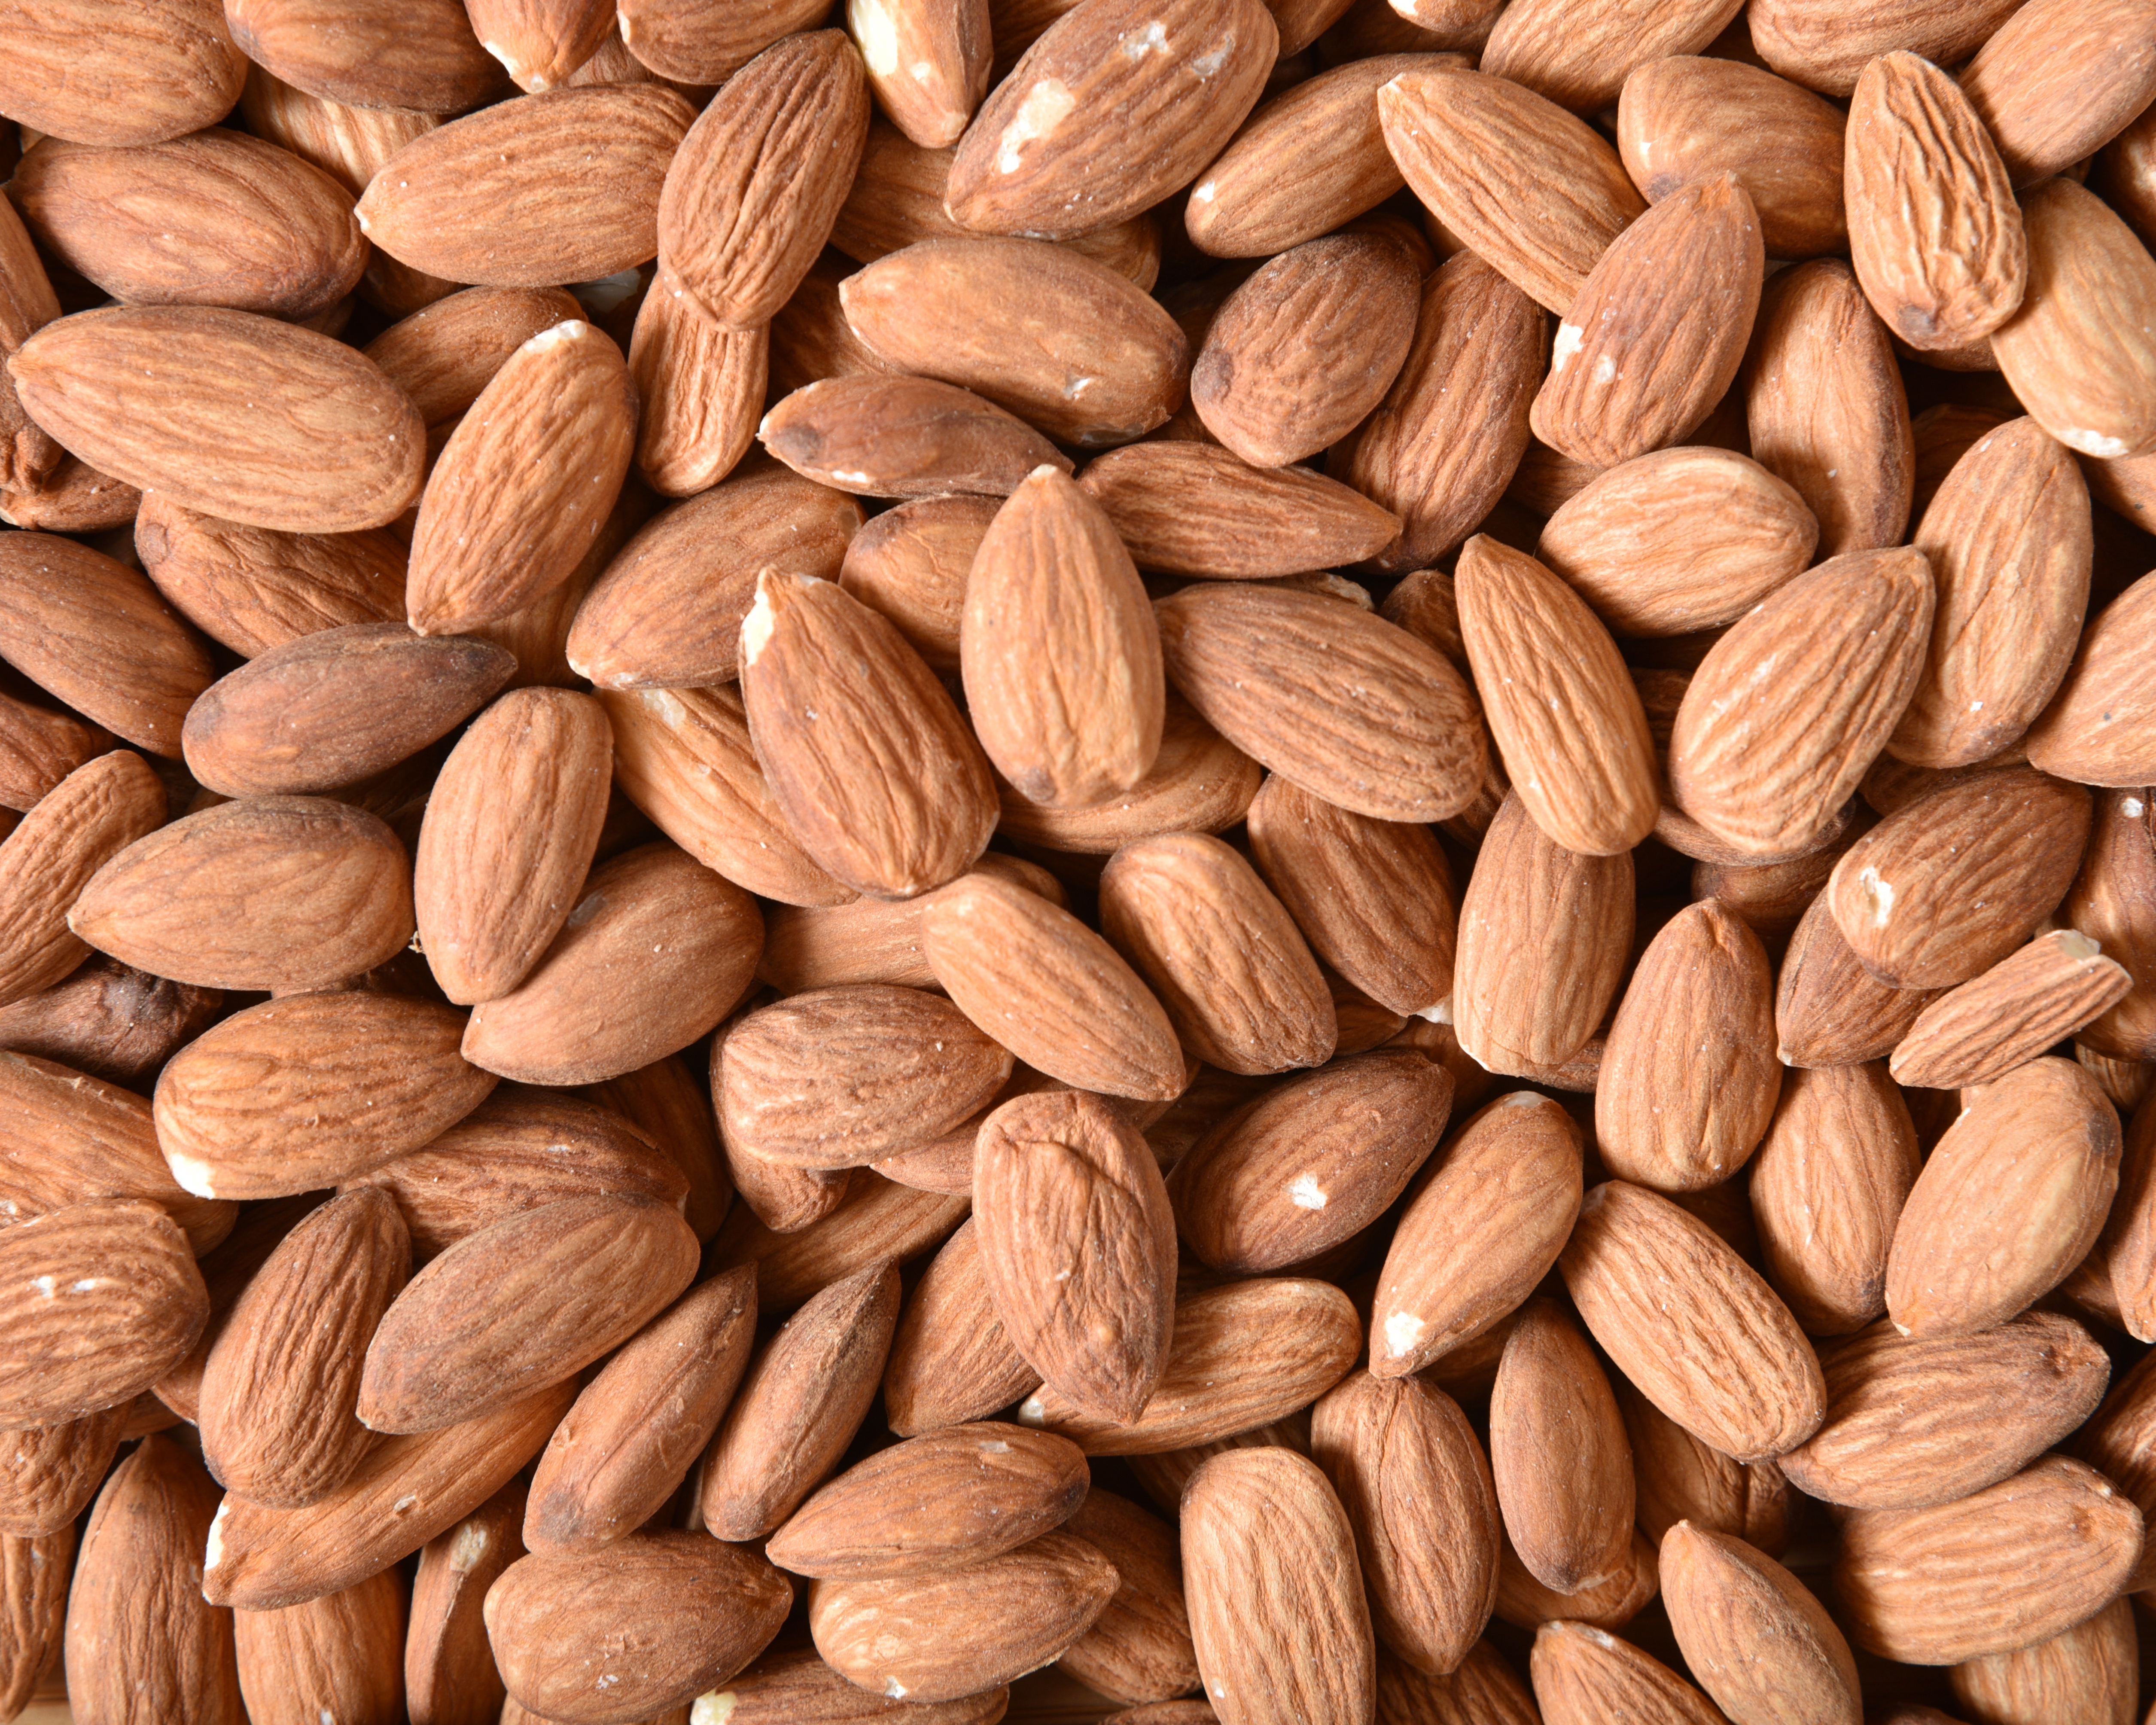 Collagen boosting almonds